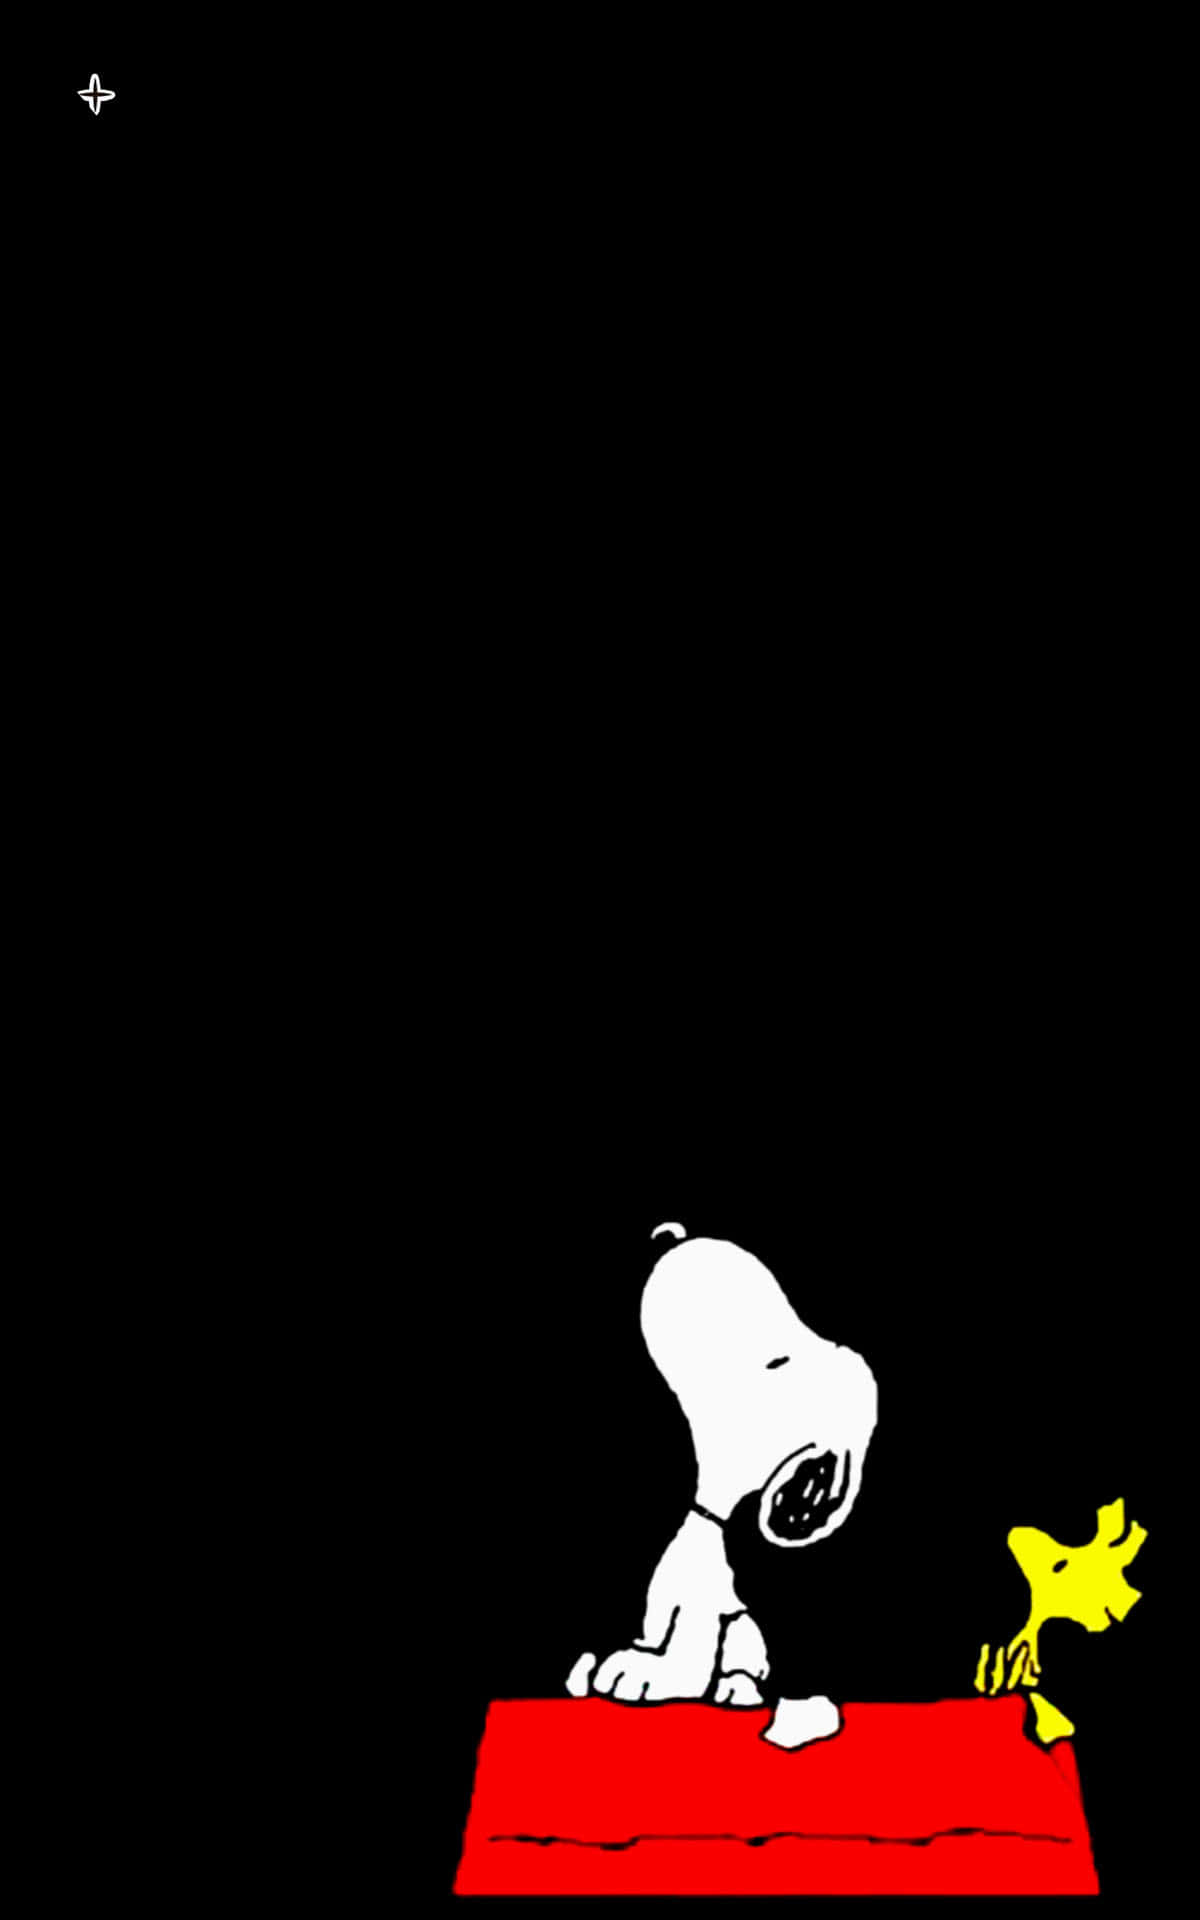 Avida Com O Snoopy É Sempre Uma Aventura!